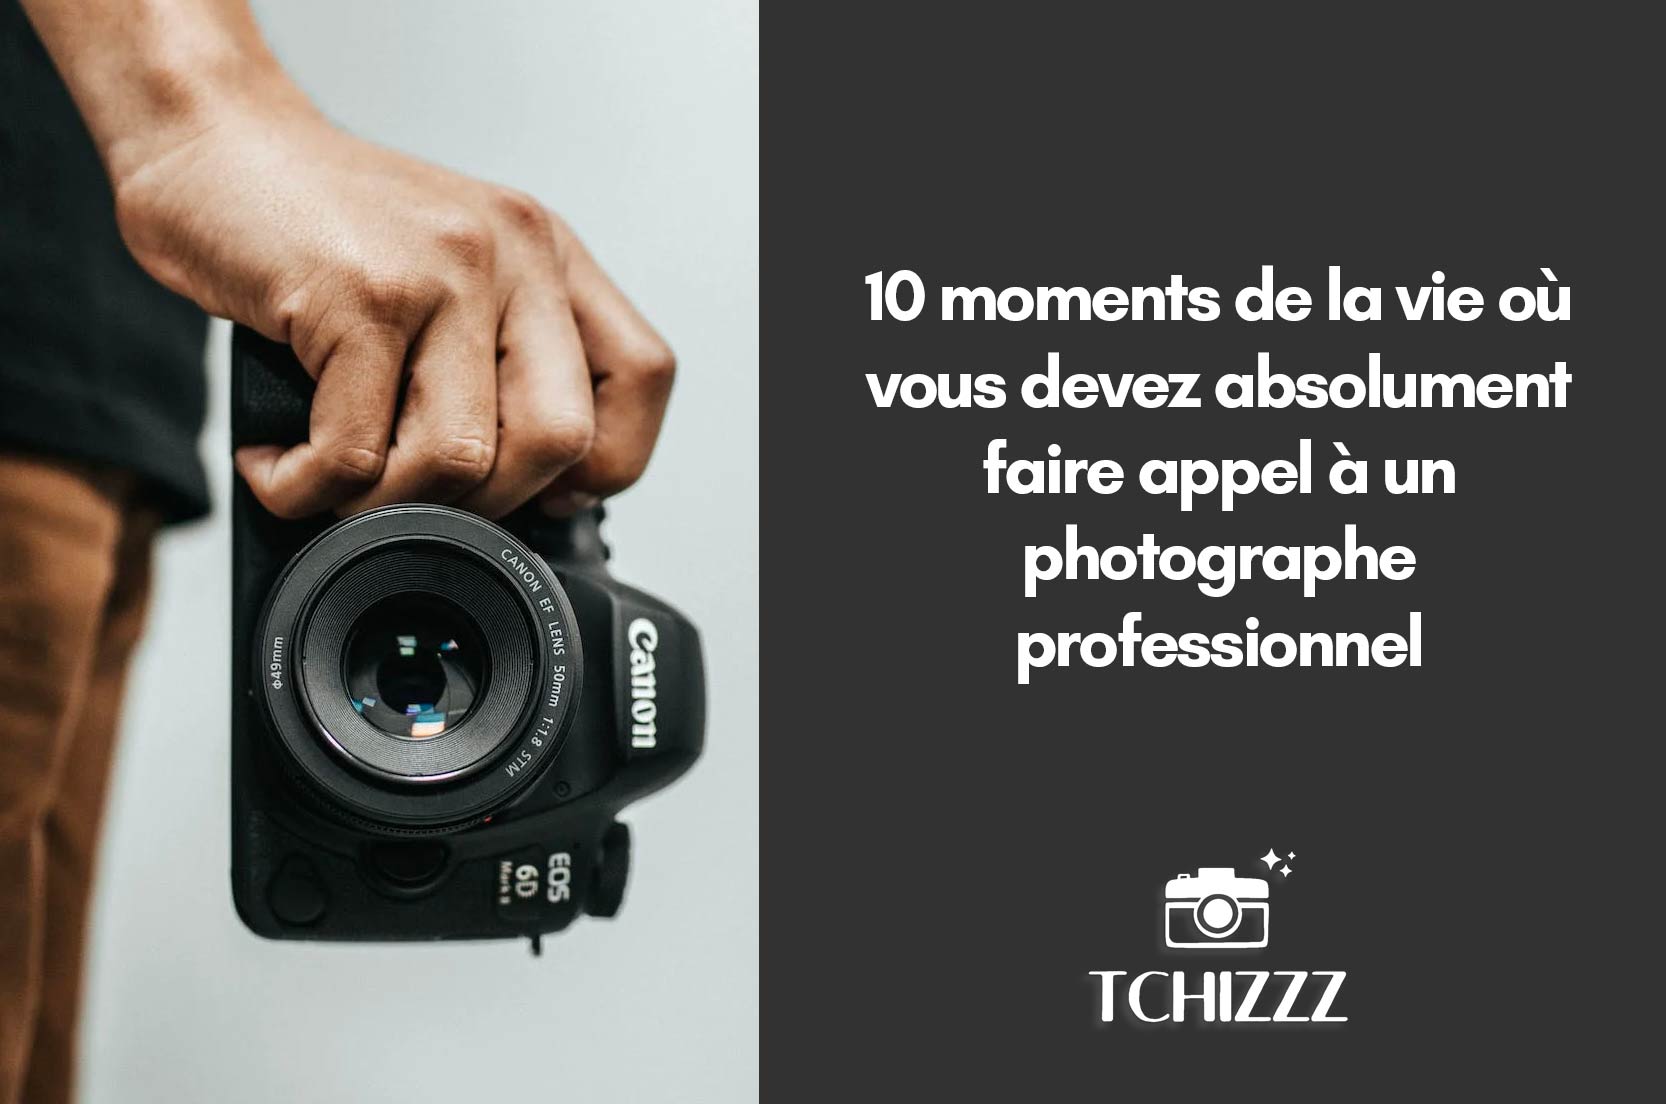 You are currently viewing 10 moments de la vie où vous devez absolument faire appel à un photographe professionnel